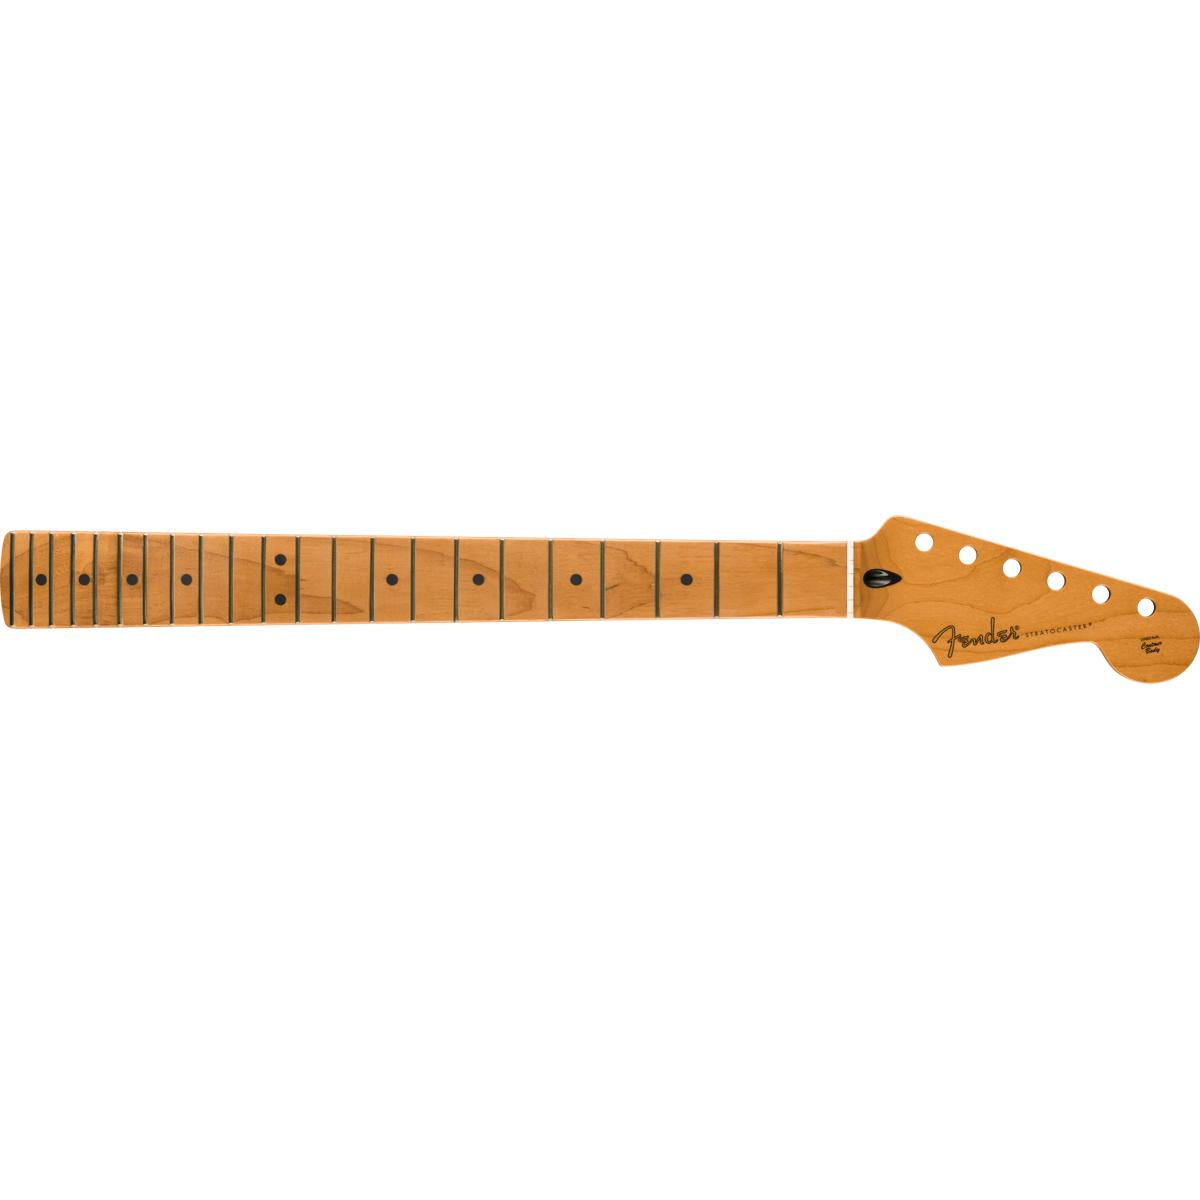 Fender Satin Roasted Maple Stratocaster Neck 22 Jumbo Frets 12inch Radius Maple Flat Oval Shape - 0990492920